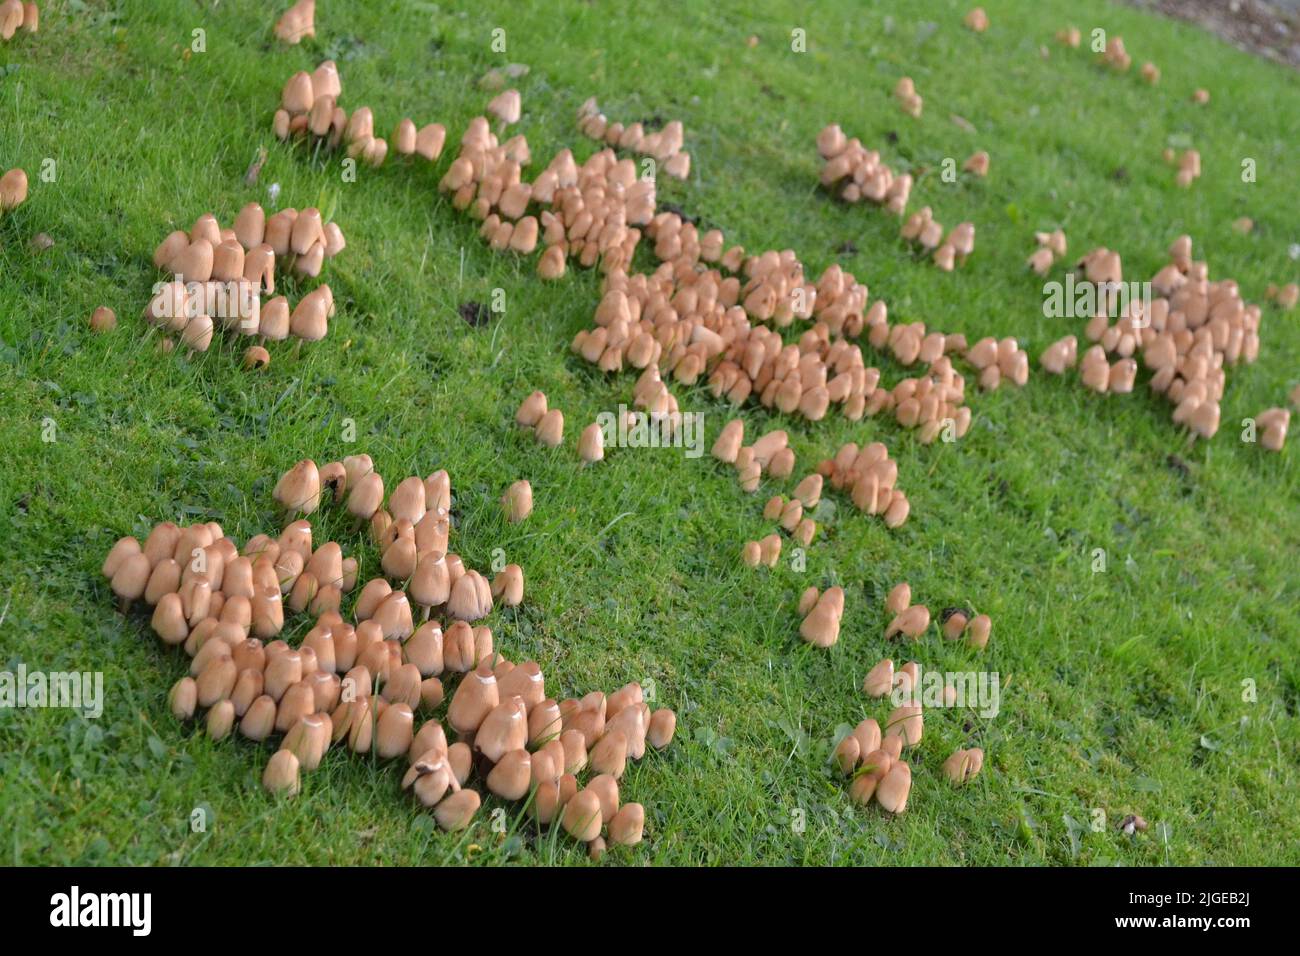 Pilze, die im Gartengras wachsen - Tawny Brown Colour Cap - Coprinellus Micaceus und aus der Familie der Psathyrellaceae - Yorkshire UK Stockfoto